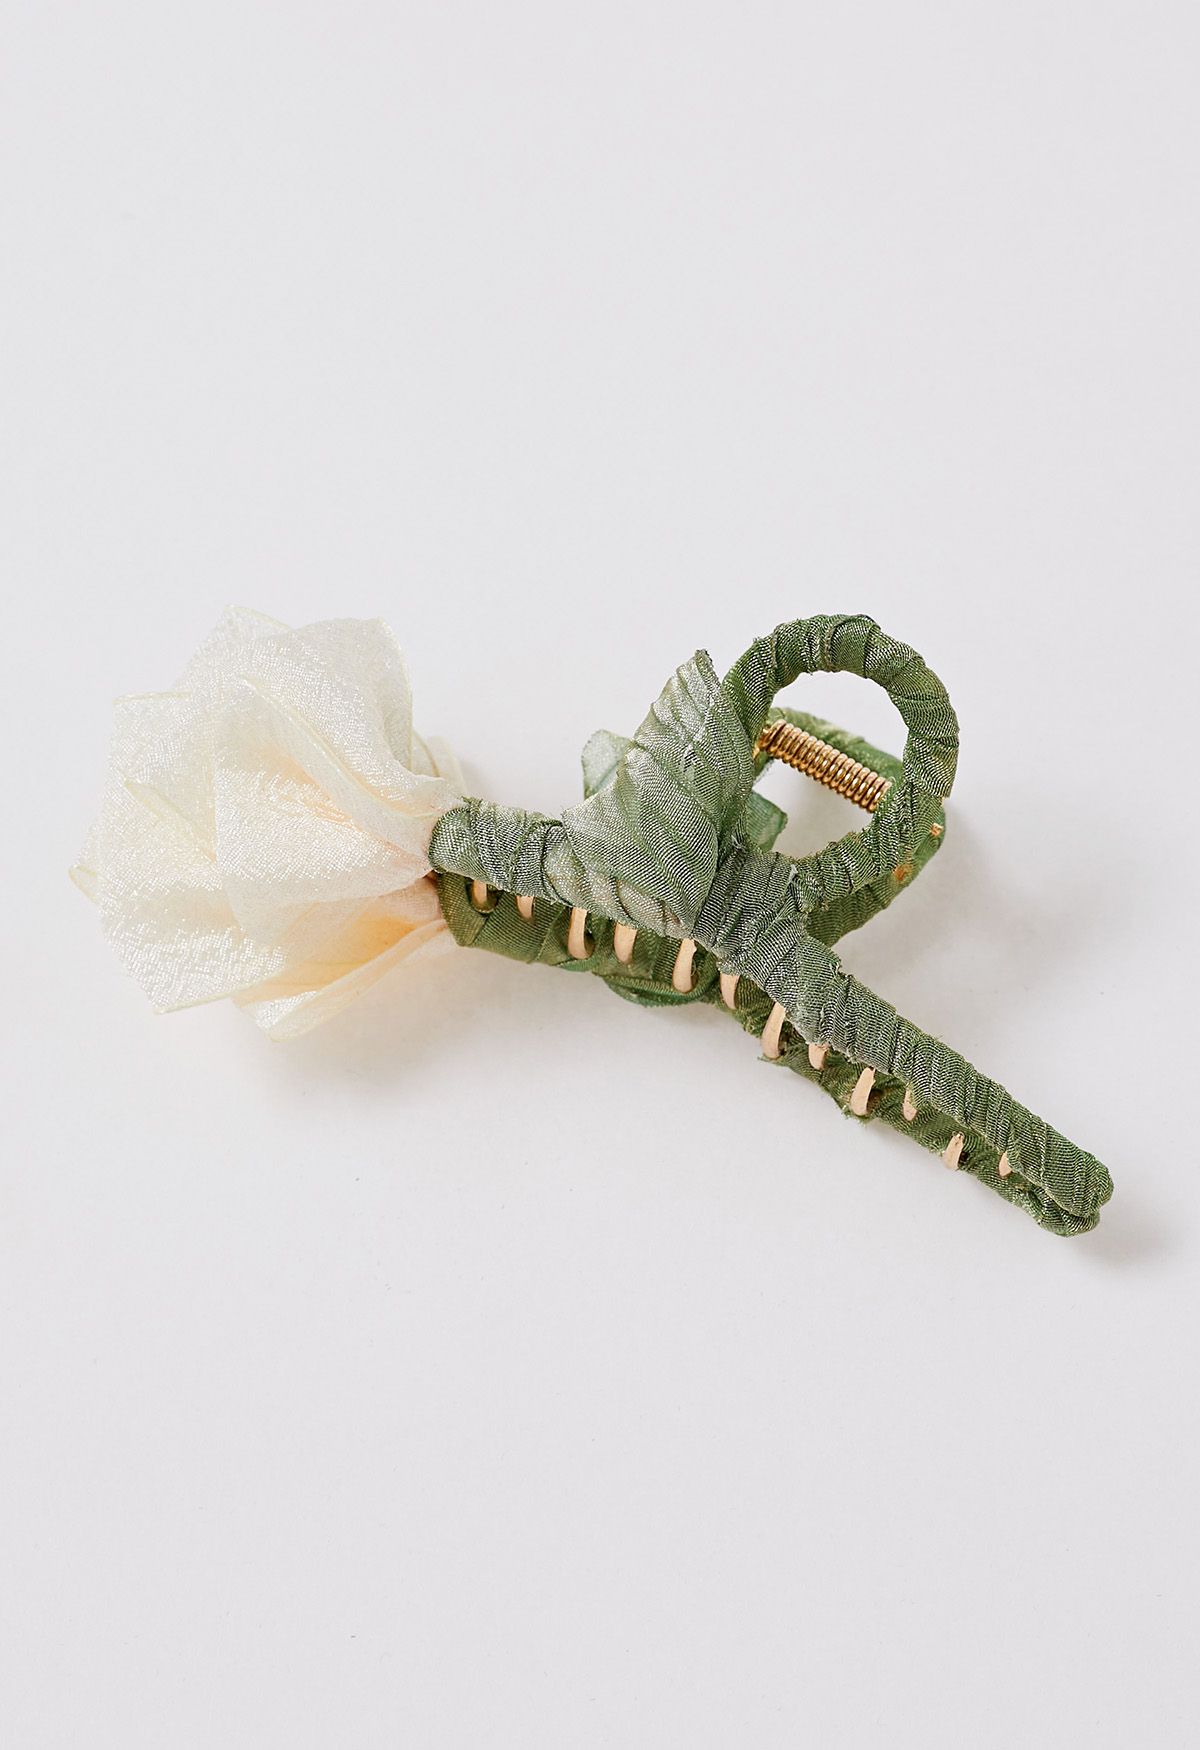 Exquisite handgefertigte Tulpen-Haarspange